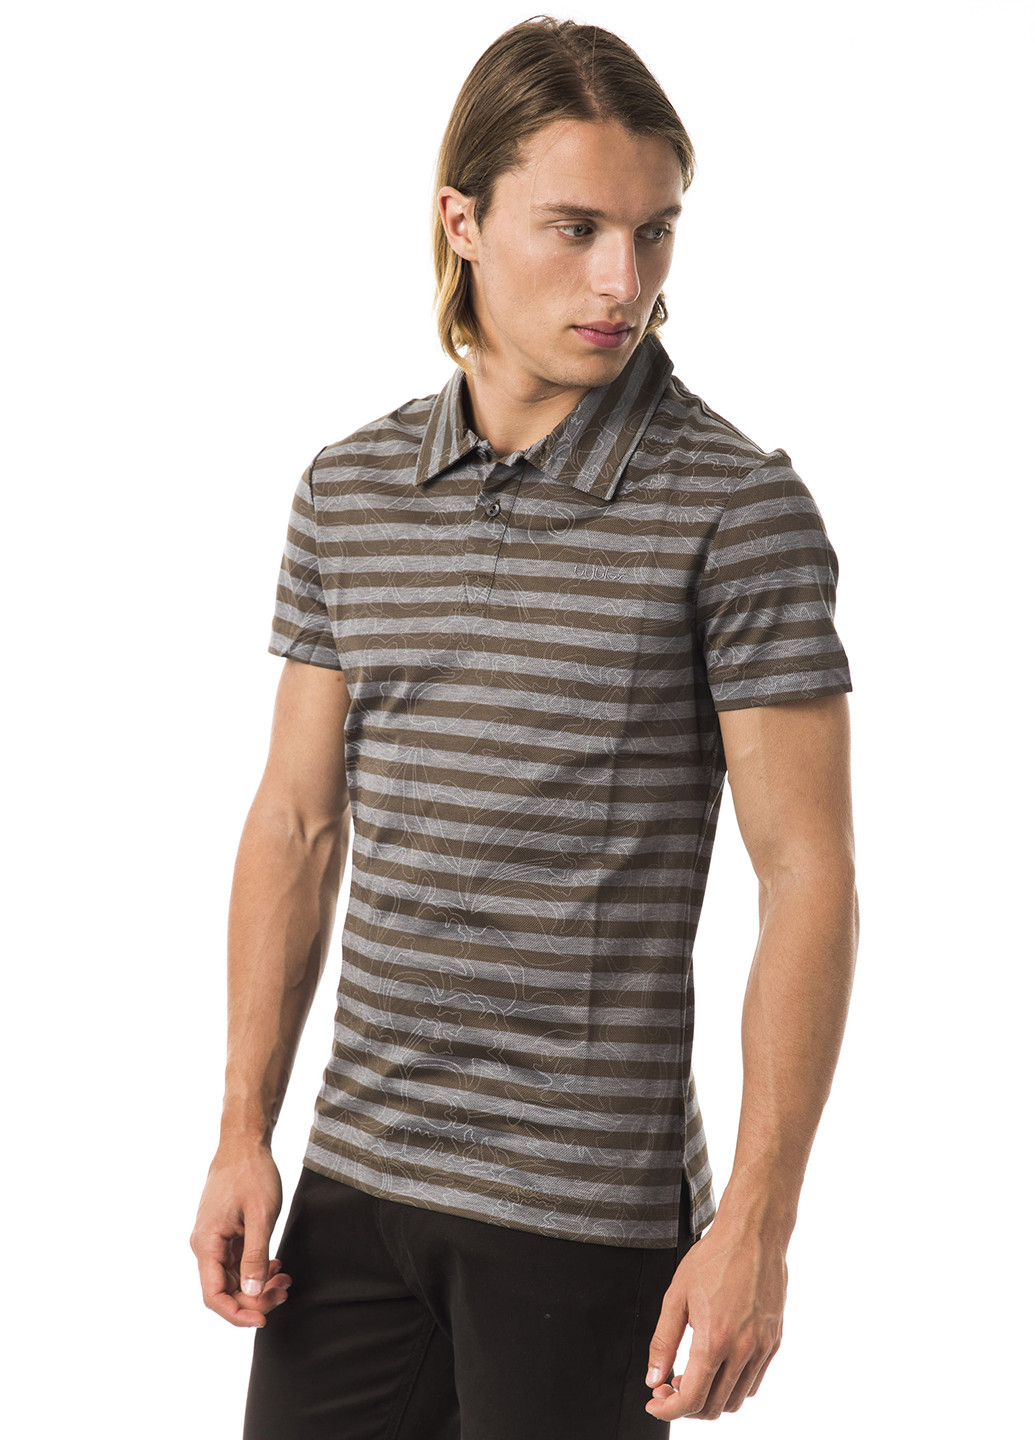 Цветная футболка-поло для мужчин Byblos в полоску